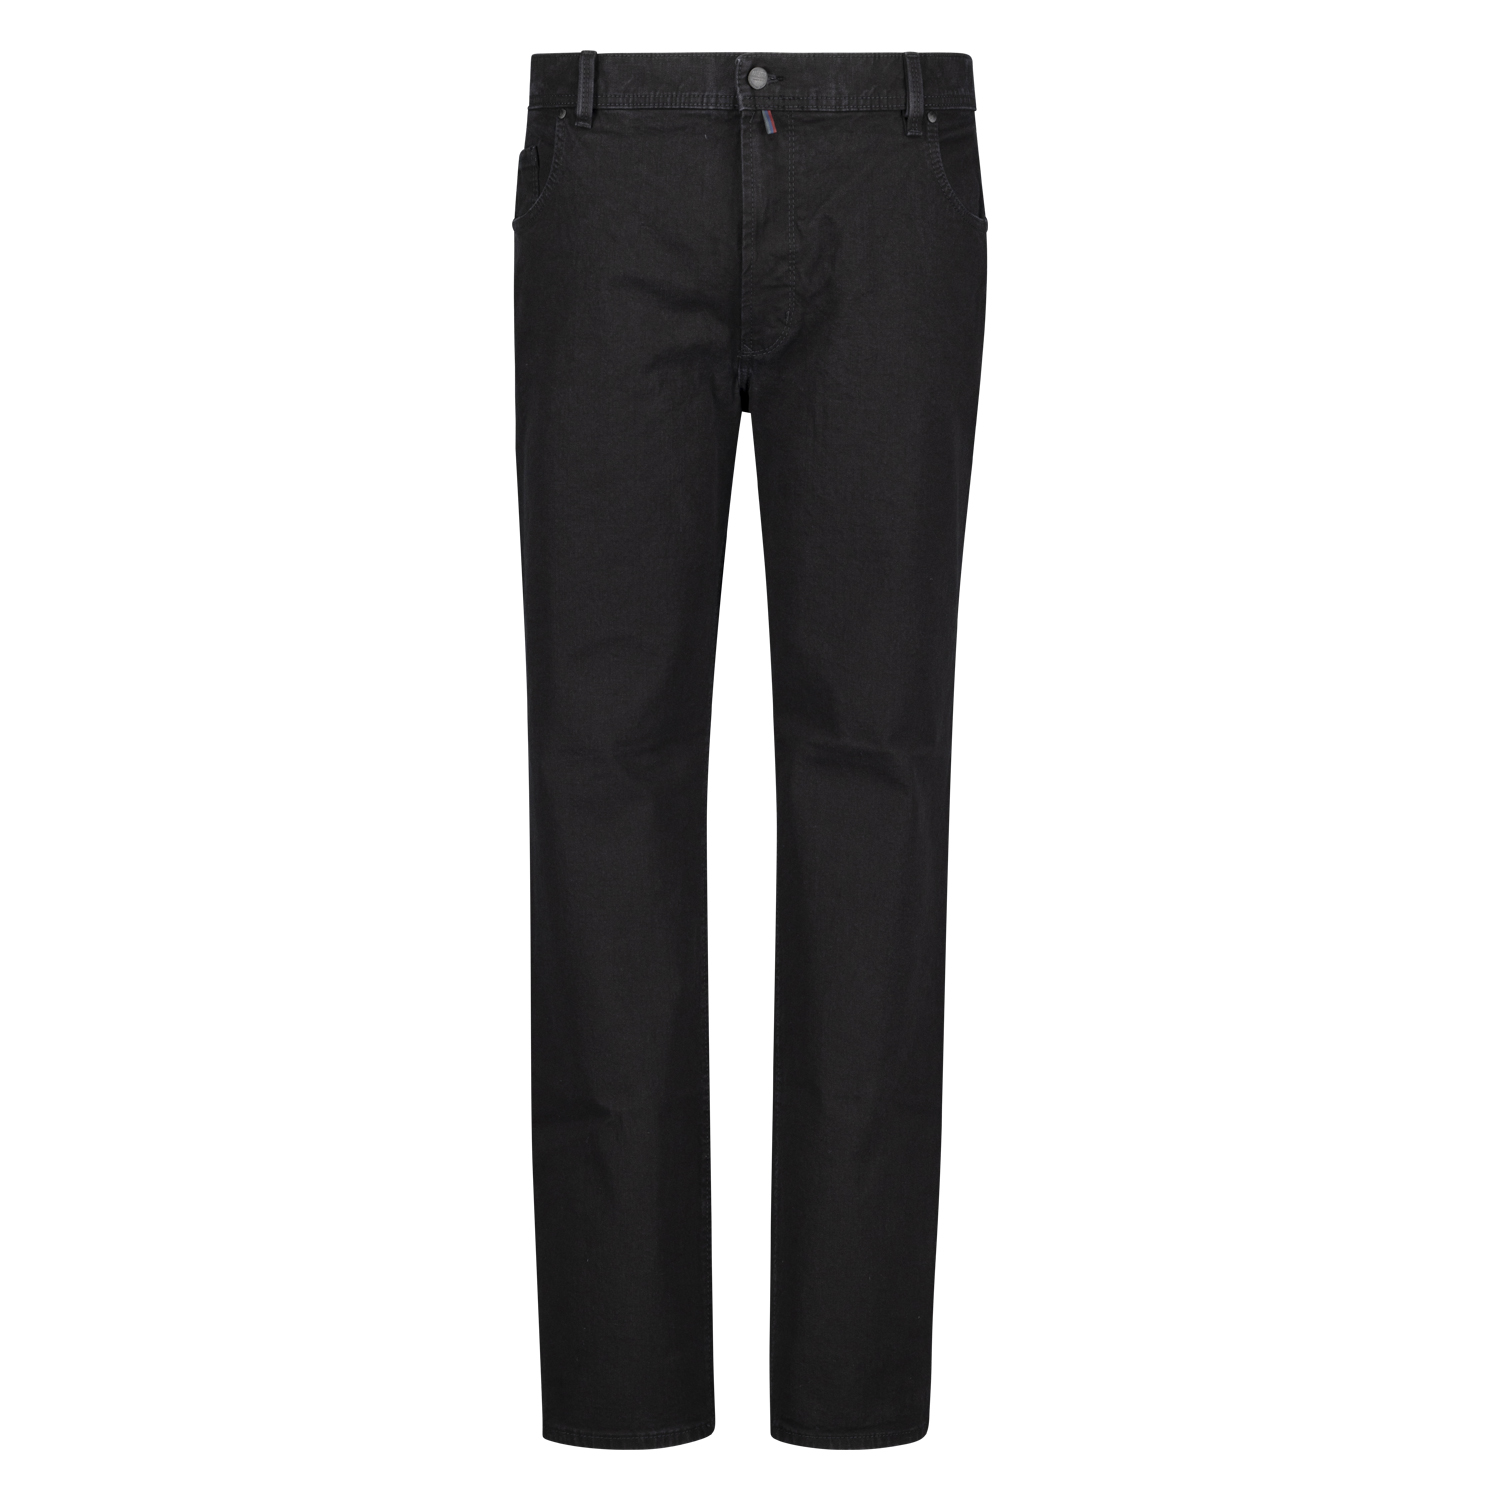 Five Pocket Jeans Herren schwarz Modell "Peter" von Pioneer in Bauchgrößen 59 - 85